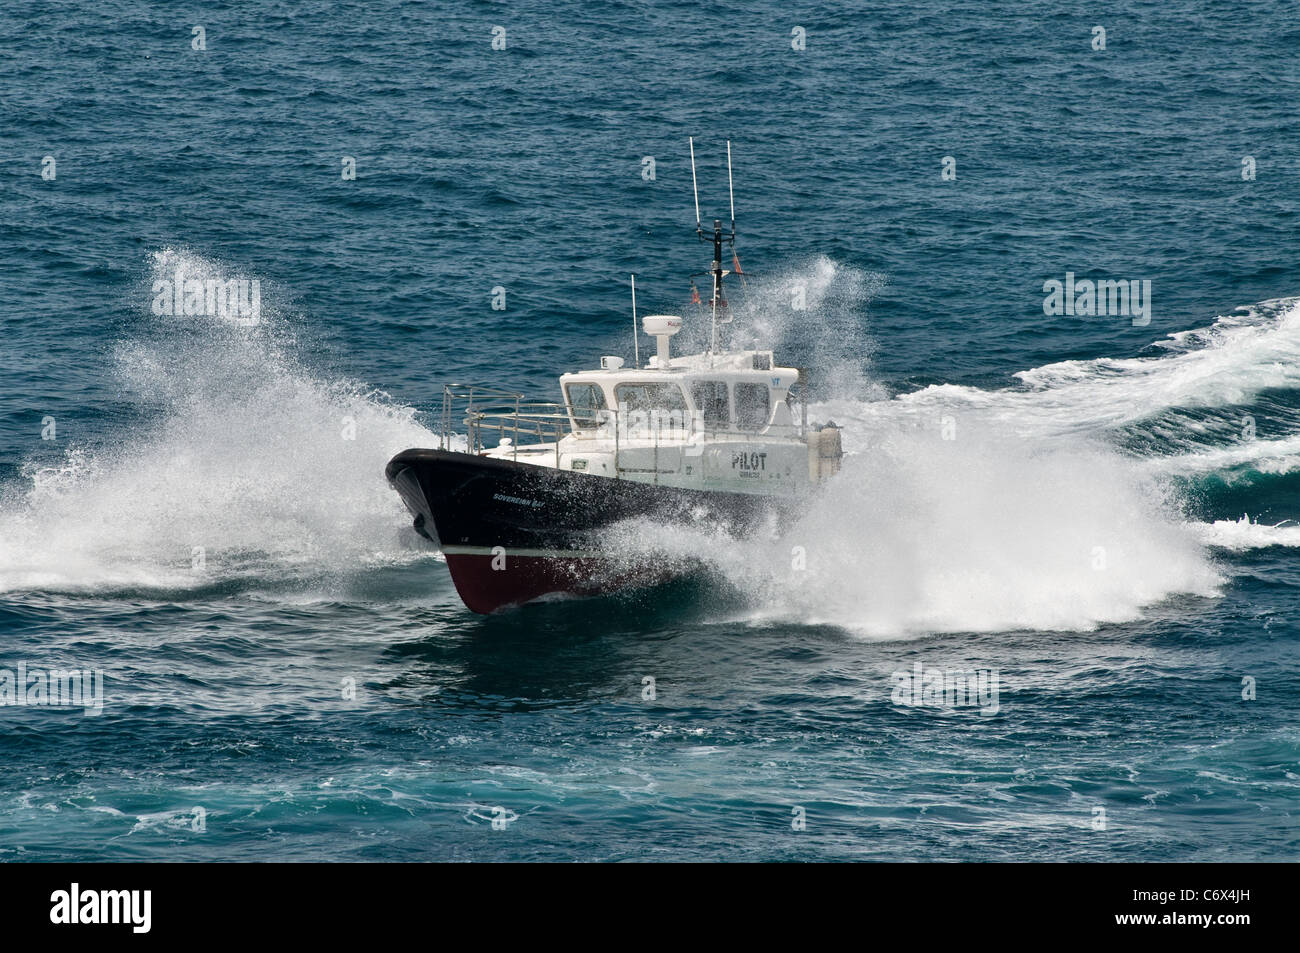 Pilot launch 'Sovereign Bay'. Sea spray bow wave. Gibraltar, Mediterranean, Europe Stock Photo